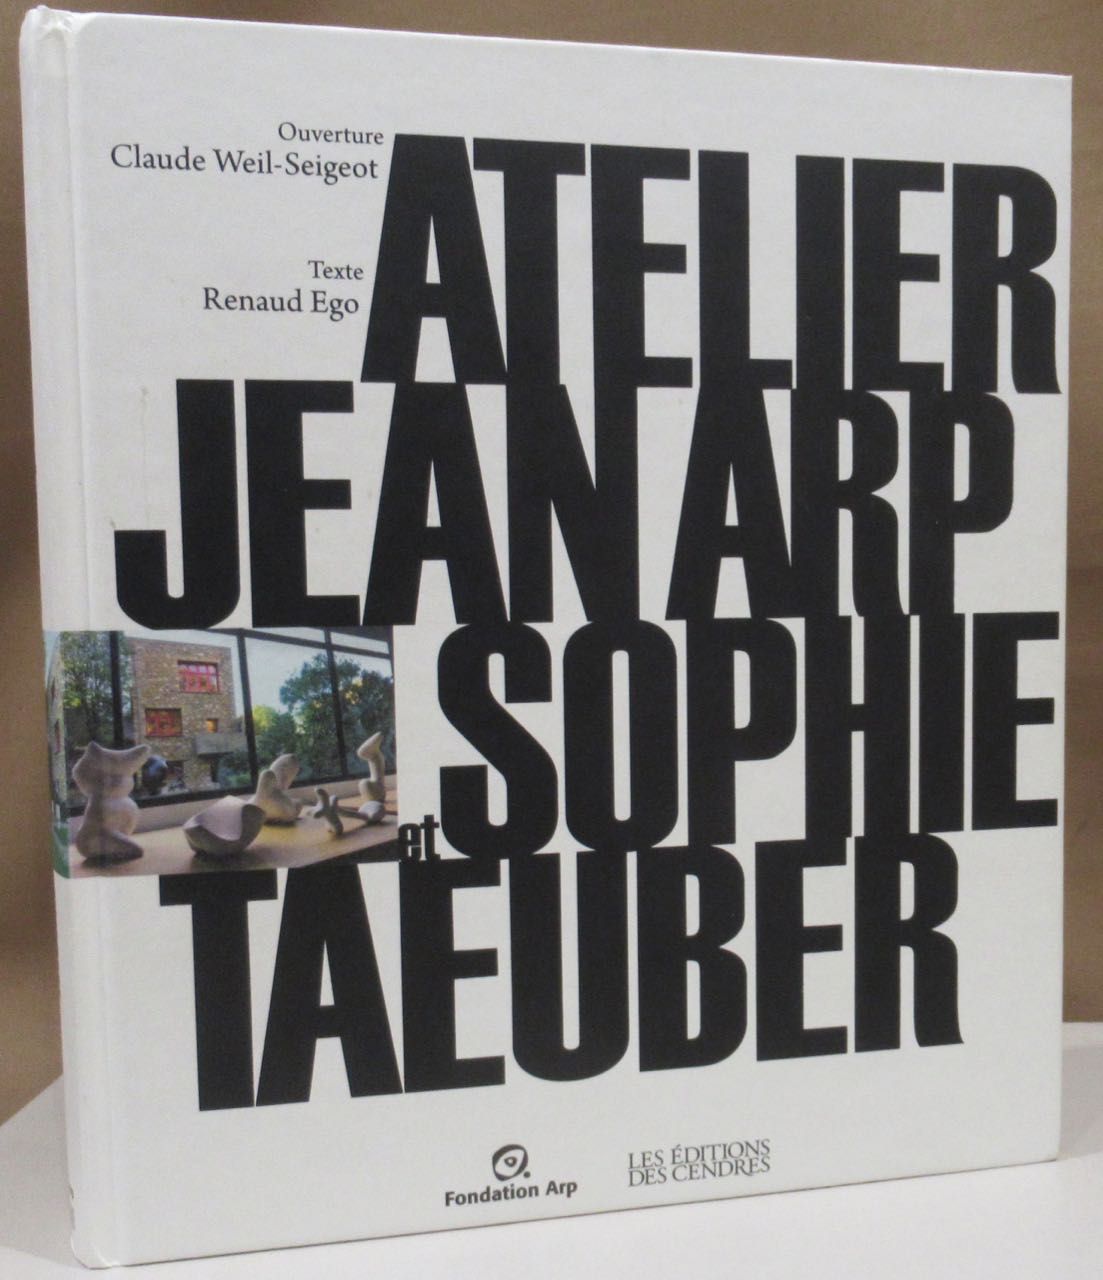 Atelier Jean Arp et Sophie Taeuber. Claude Weil-Seigeot: Dialogue avec les morts dans le labyrinthe du minotaure. Renaud Ego: 